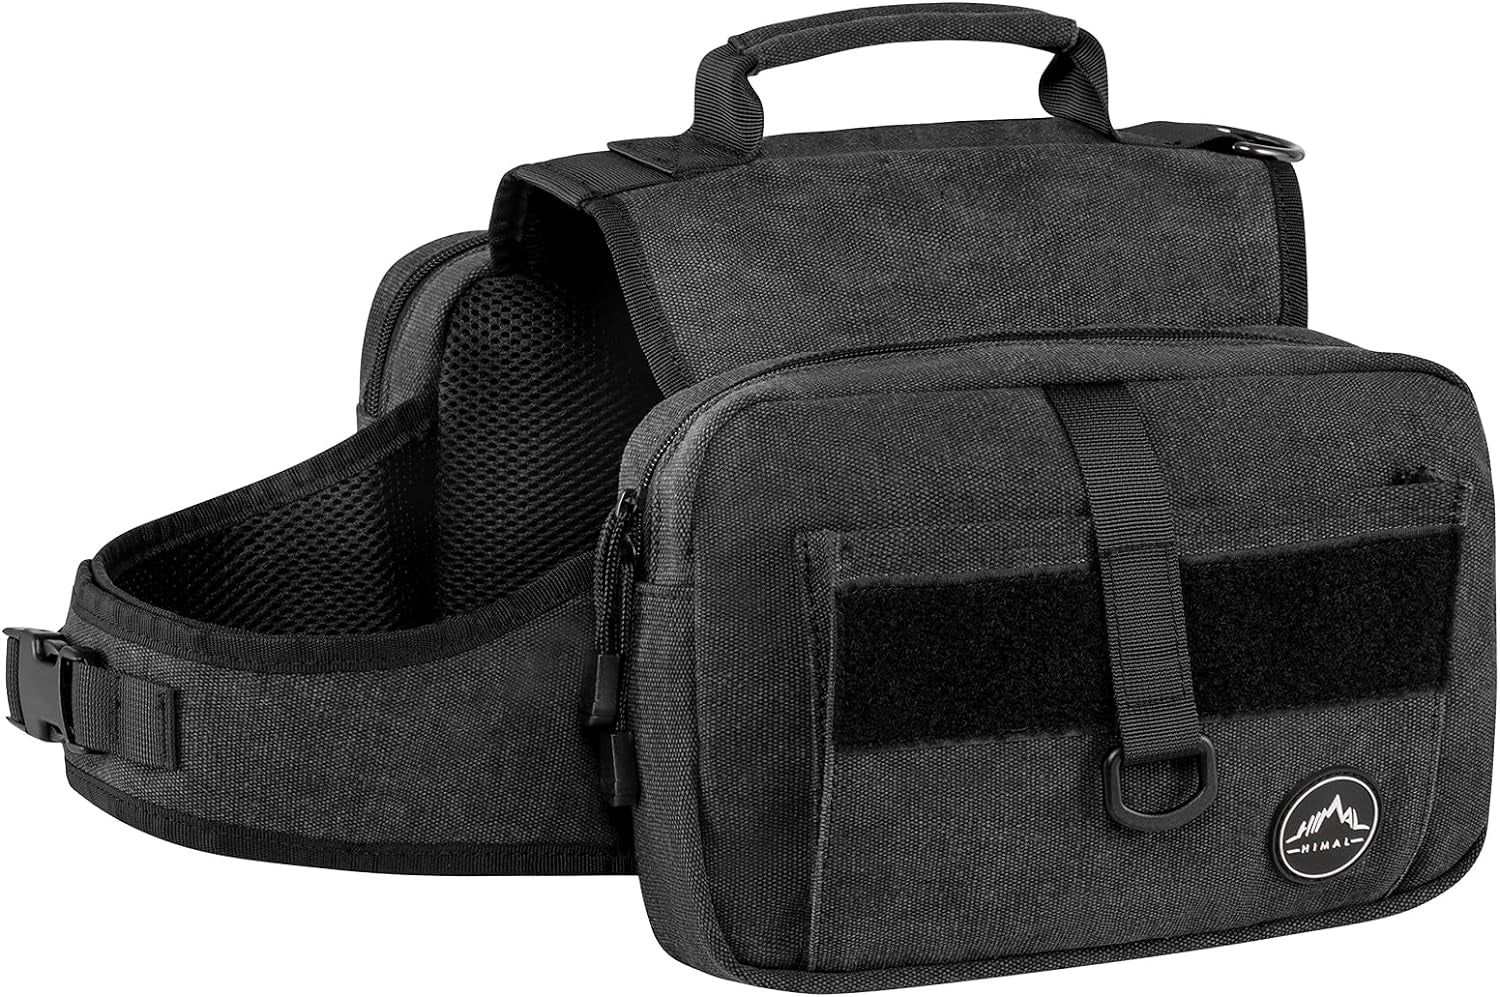 Dog Backpack, Dog Hiking Backpack, Hound Saddle Bag for Large Dog with Side Pockets & Adjustable Strap